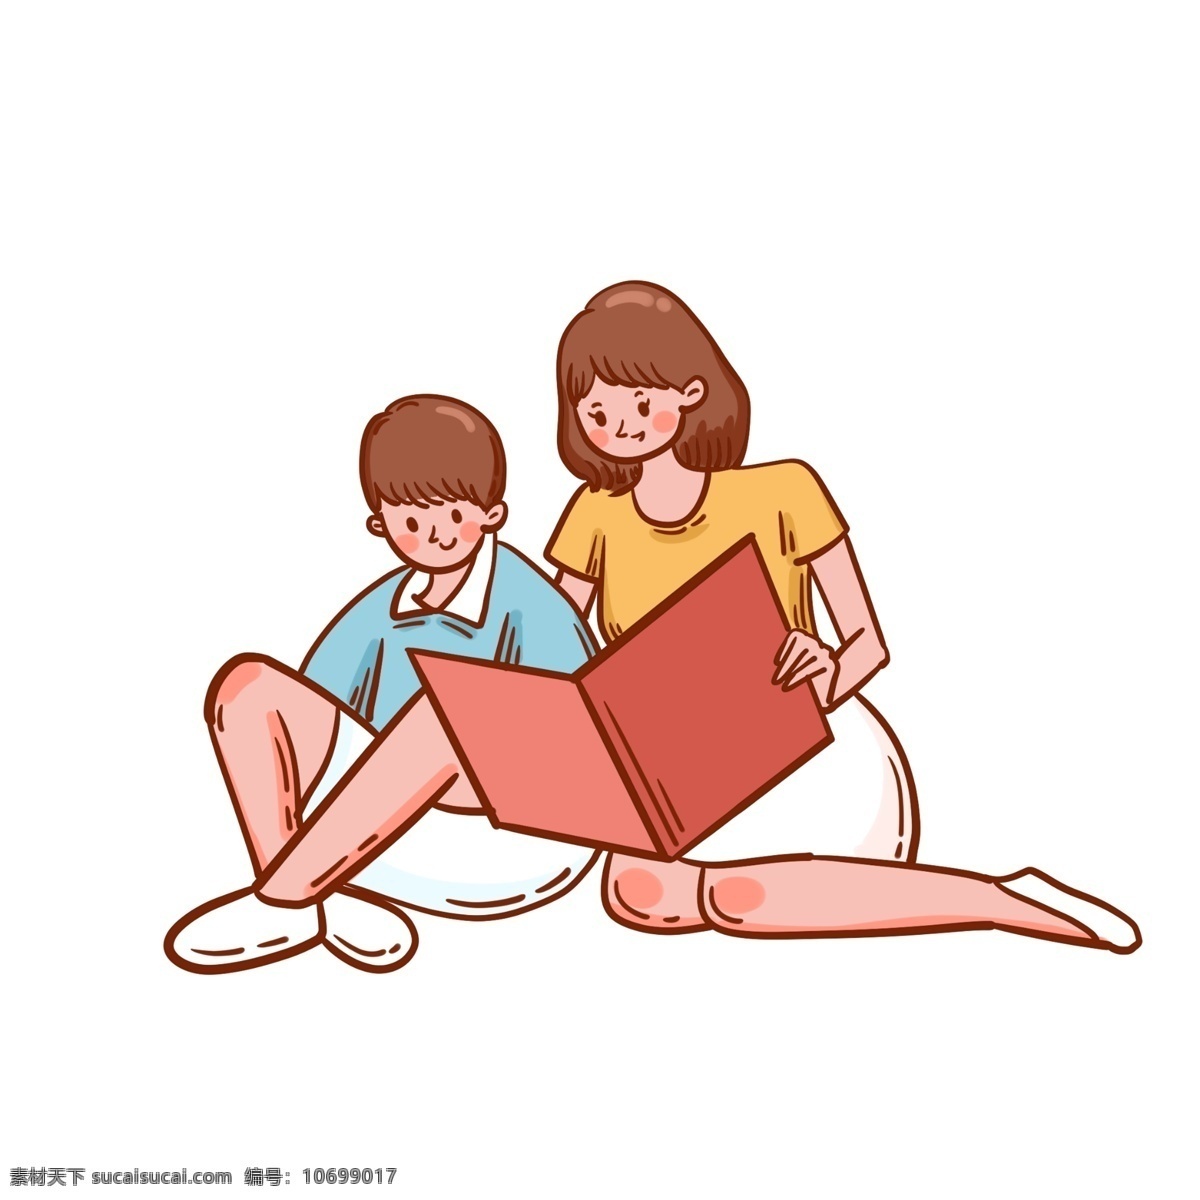 卡通 可爱 矢量 免 抠 世界 读书 日 母子 免抠 世界读书日 妈妈 孩子 男孩 书本 看书 认真